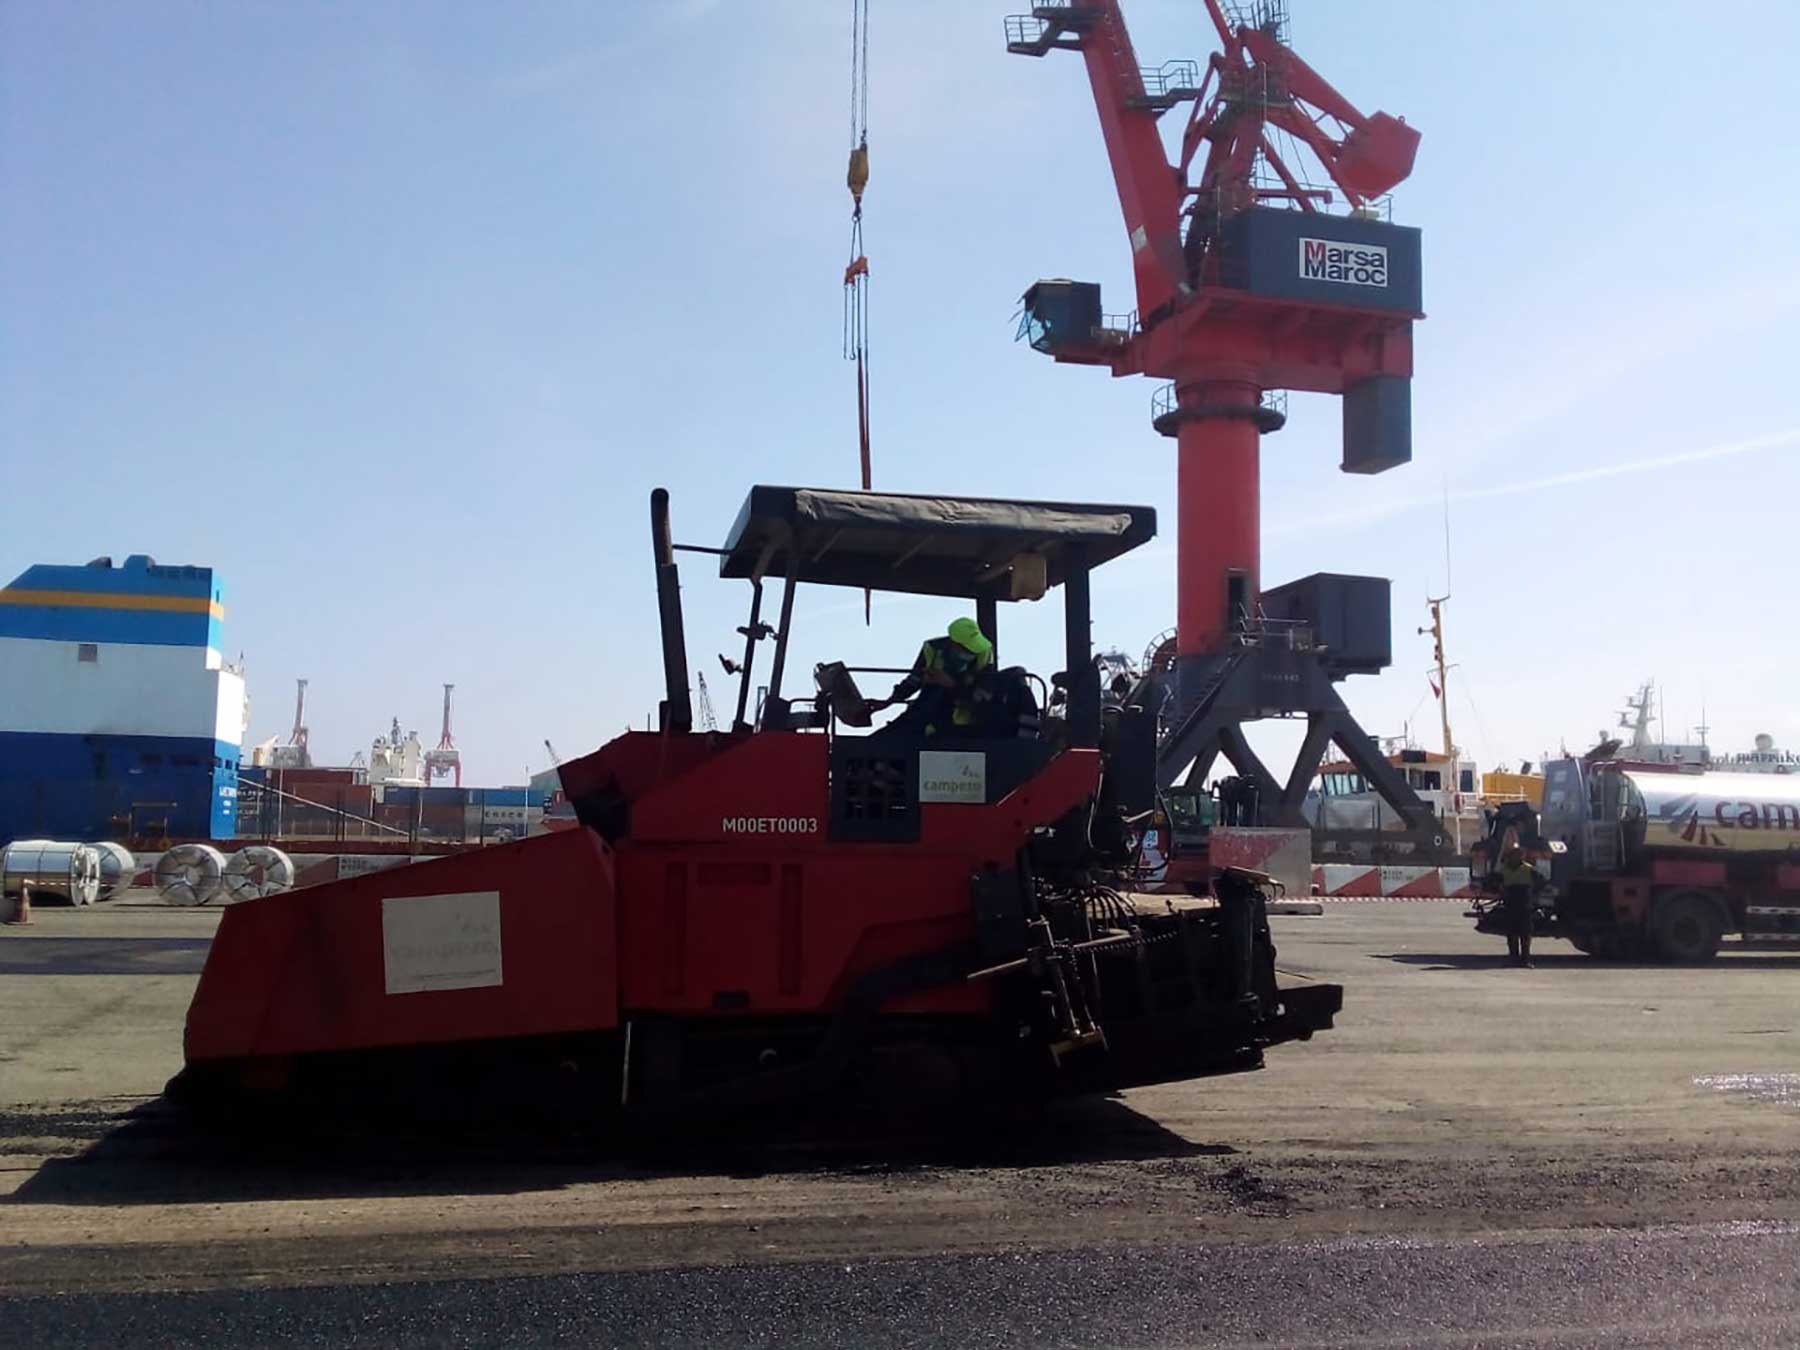 Refuerzo de vías en las terminales de Marsa Maroc en el Puerto de Casablanca Campezo